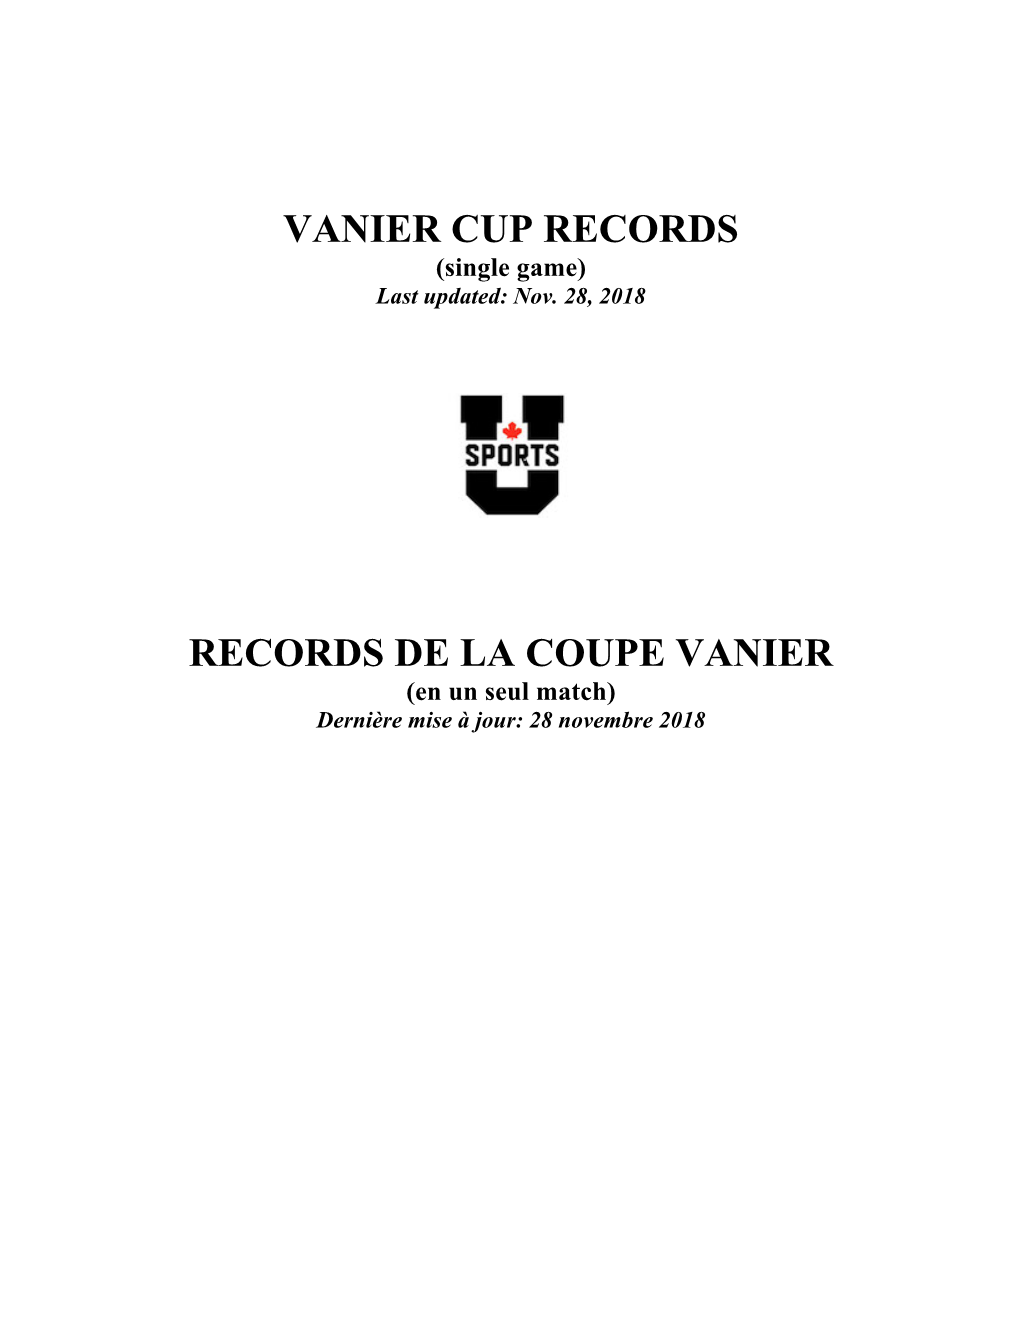 Vanier Cup Records Records De La Coupe Vanier